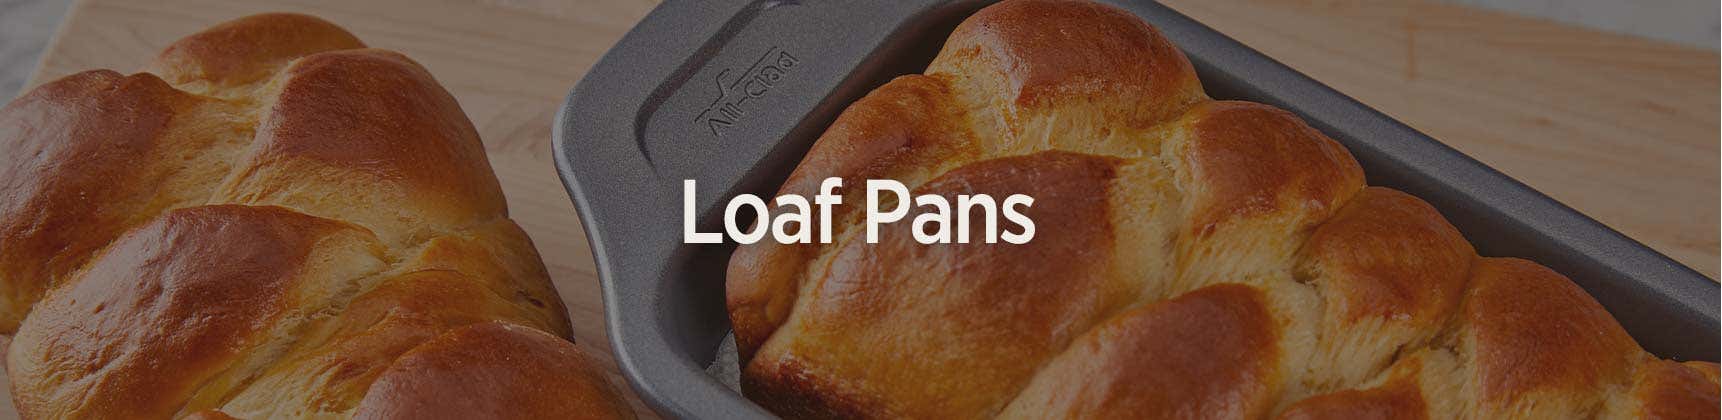 Loaf Pans